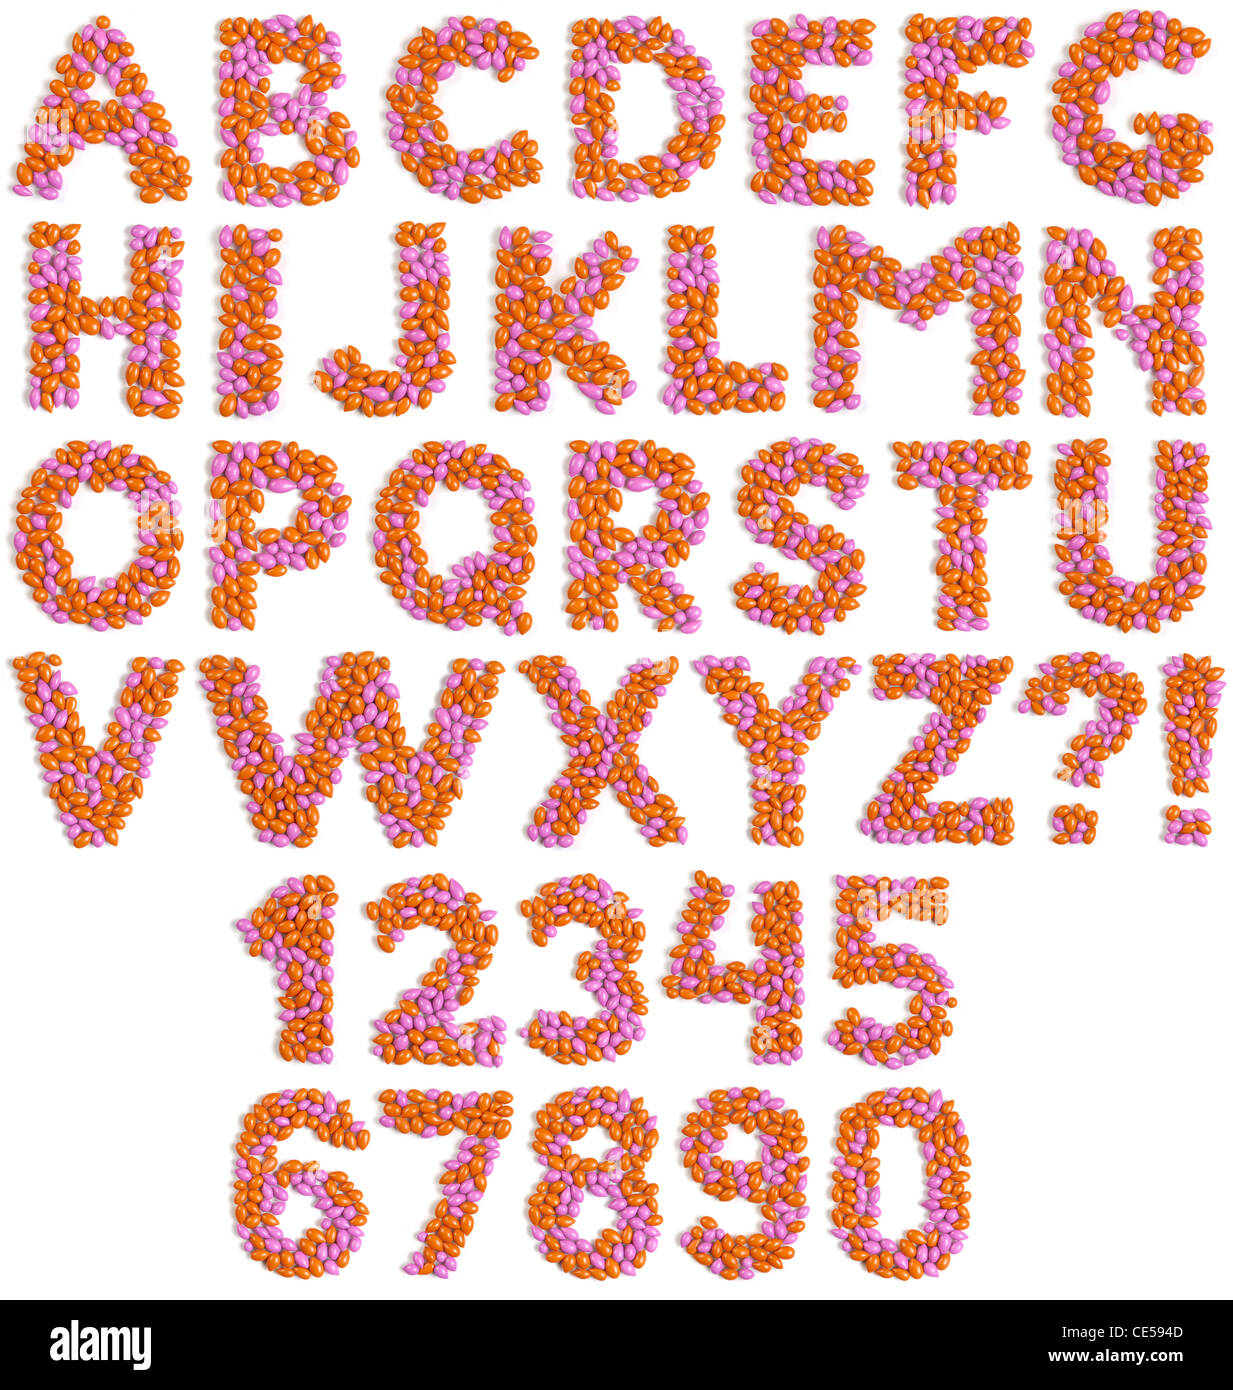 Bonbon Dragee lettres alphabet et numéros de modèle colorés faits de isolé sur fond blanc Banque D'Images